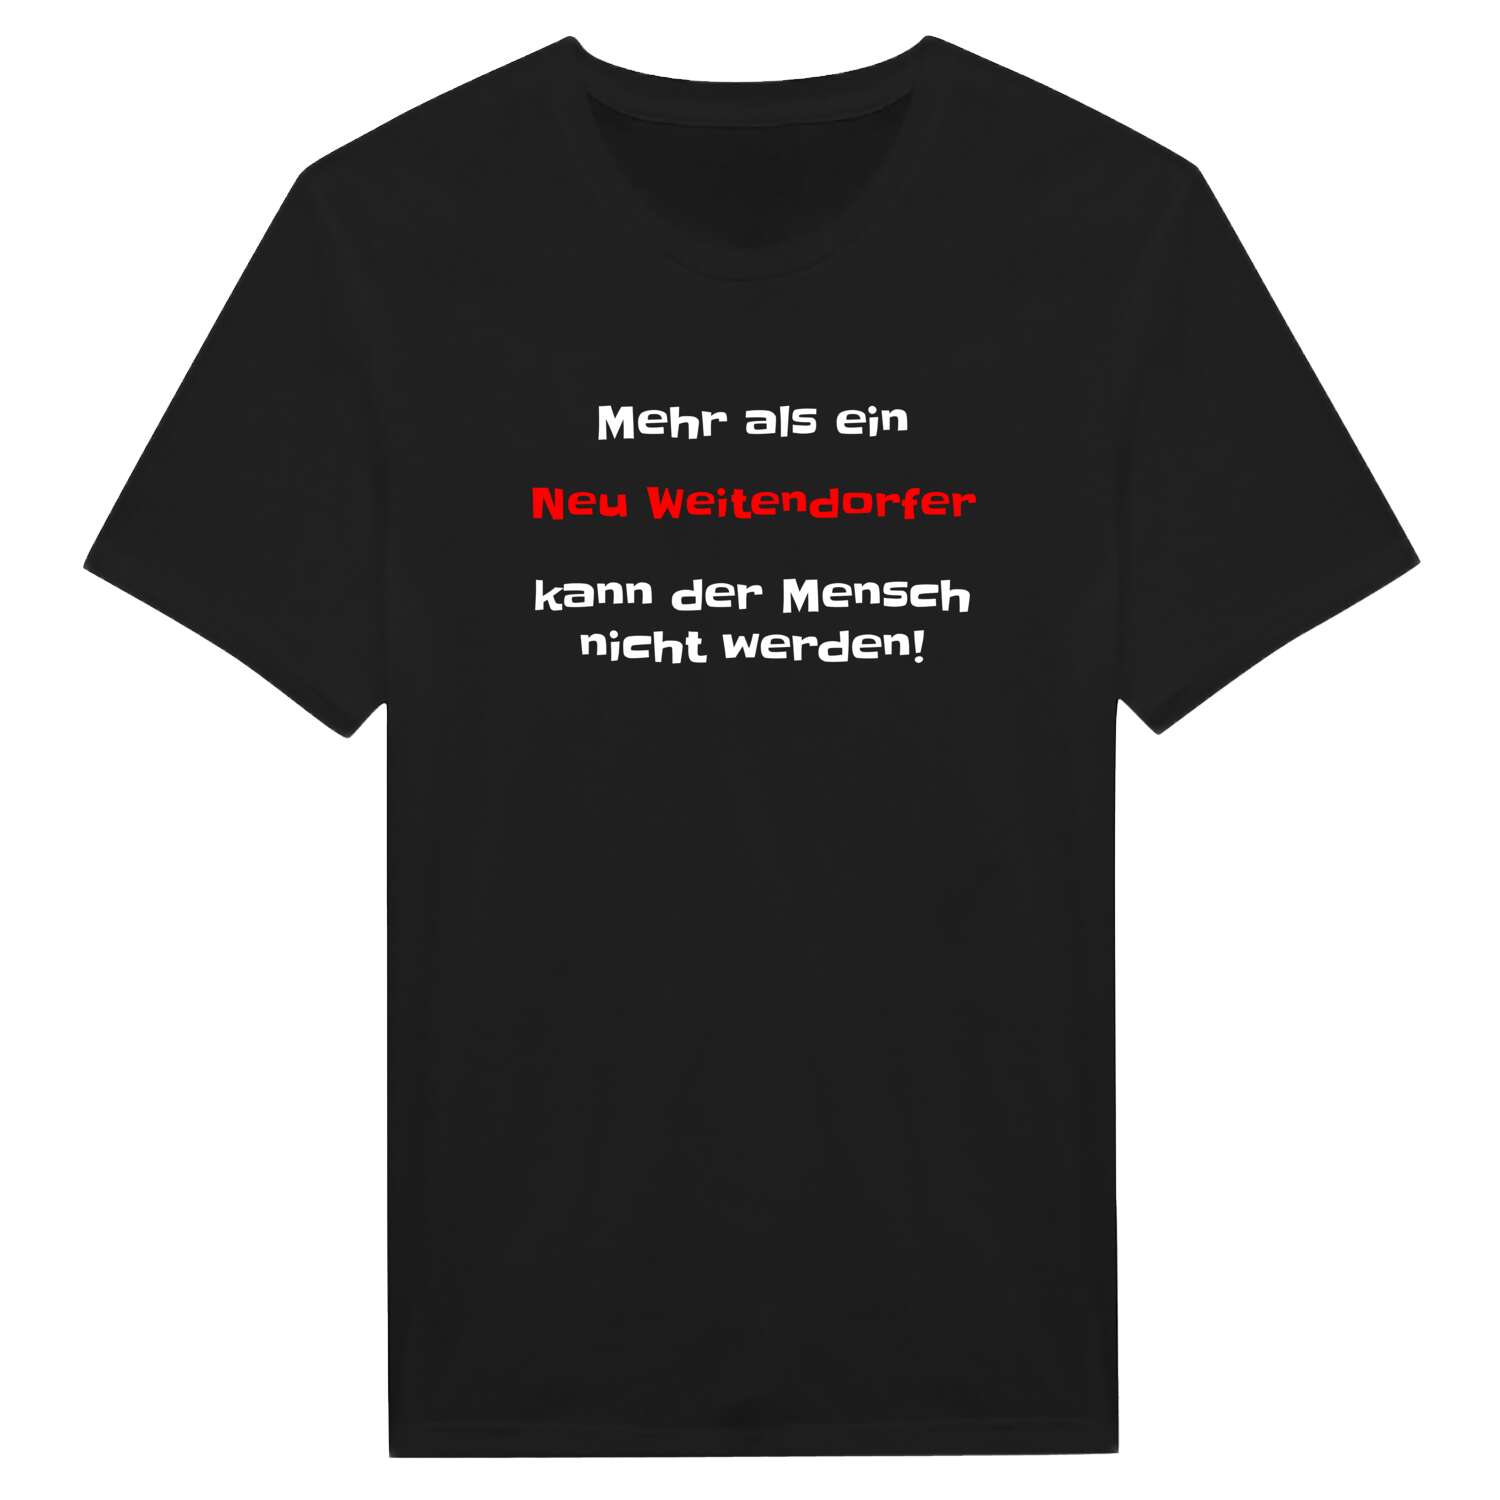 Neu Weitendorf T-Shirt »Mehr als ein«